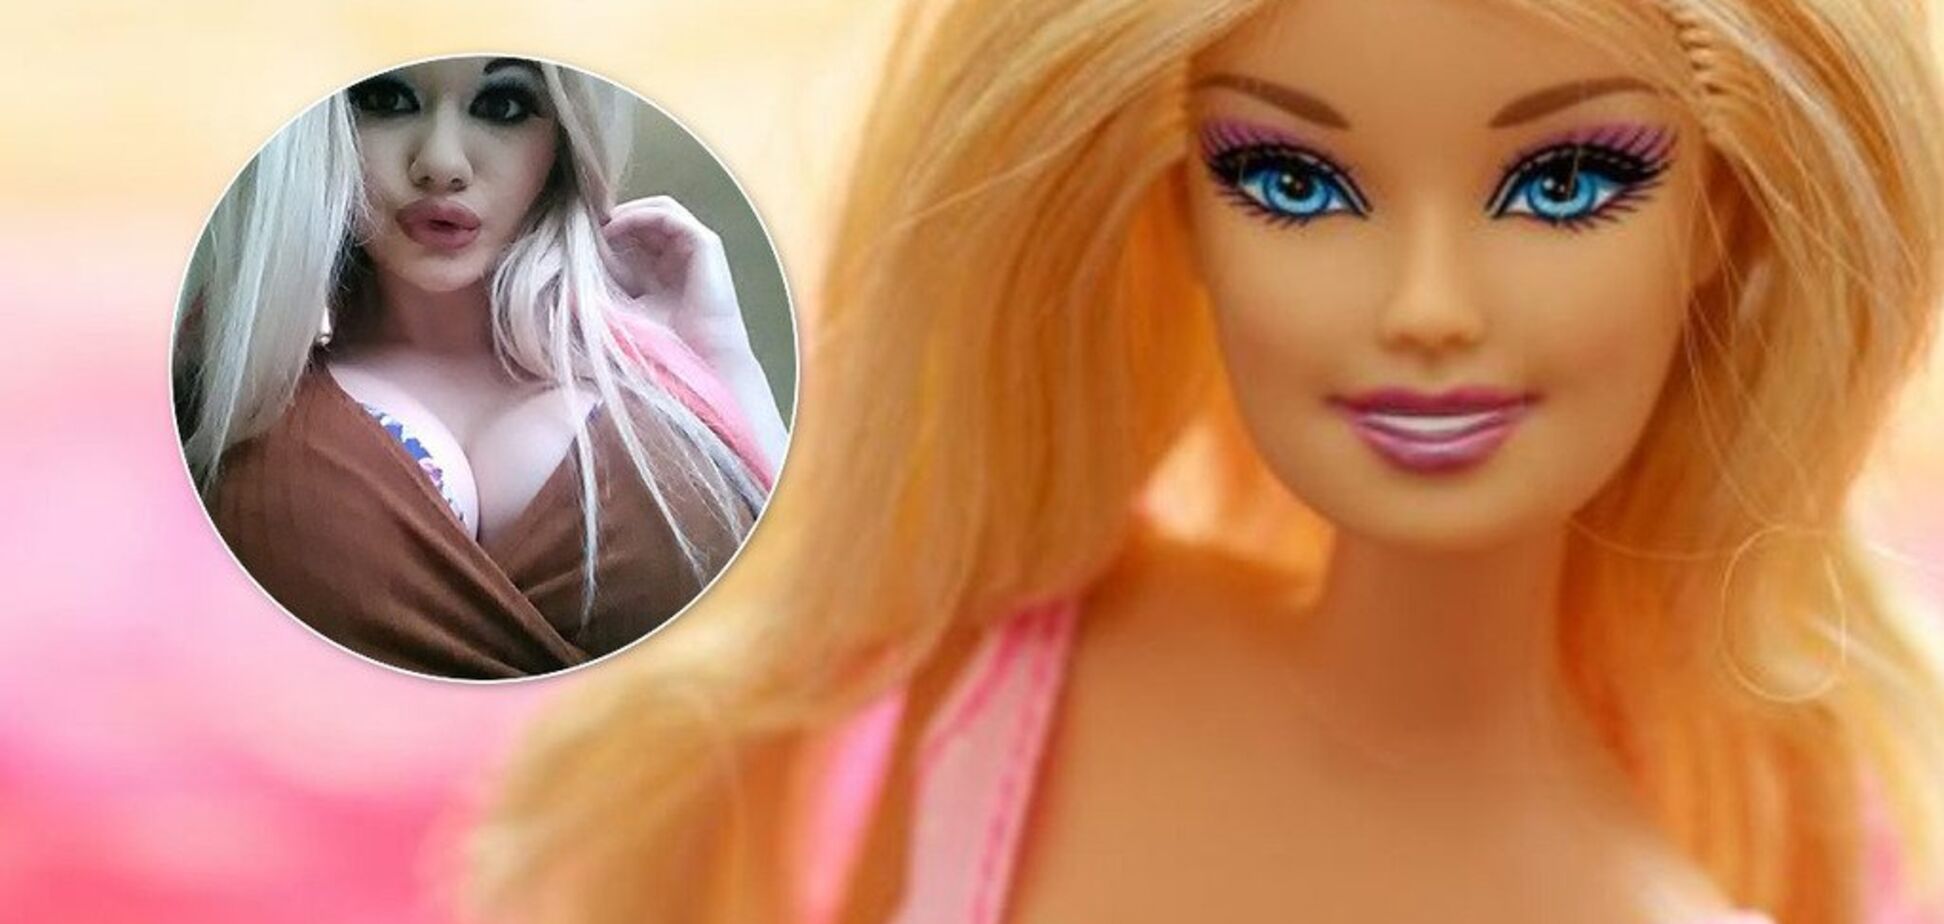 Хотела стать Барби: жертва пластических операций ужаснула внешним видом. Фото до и после